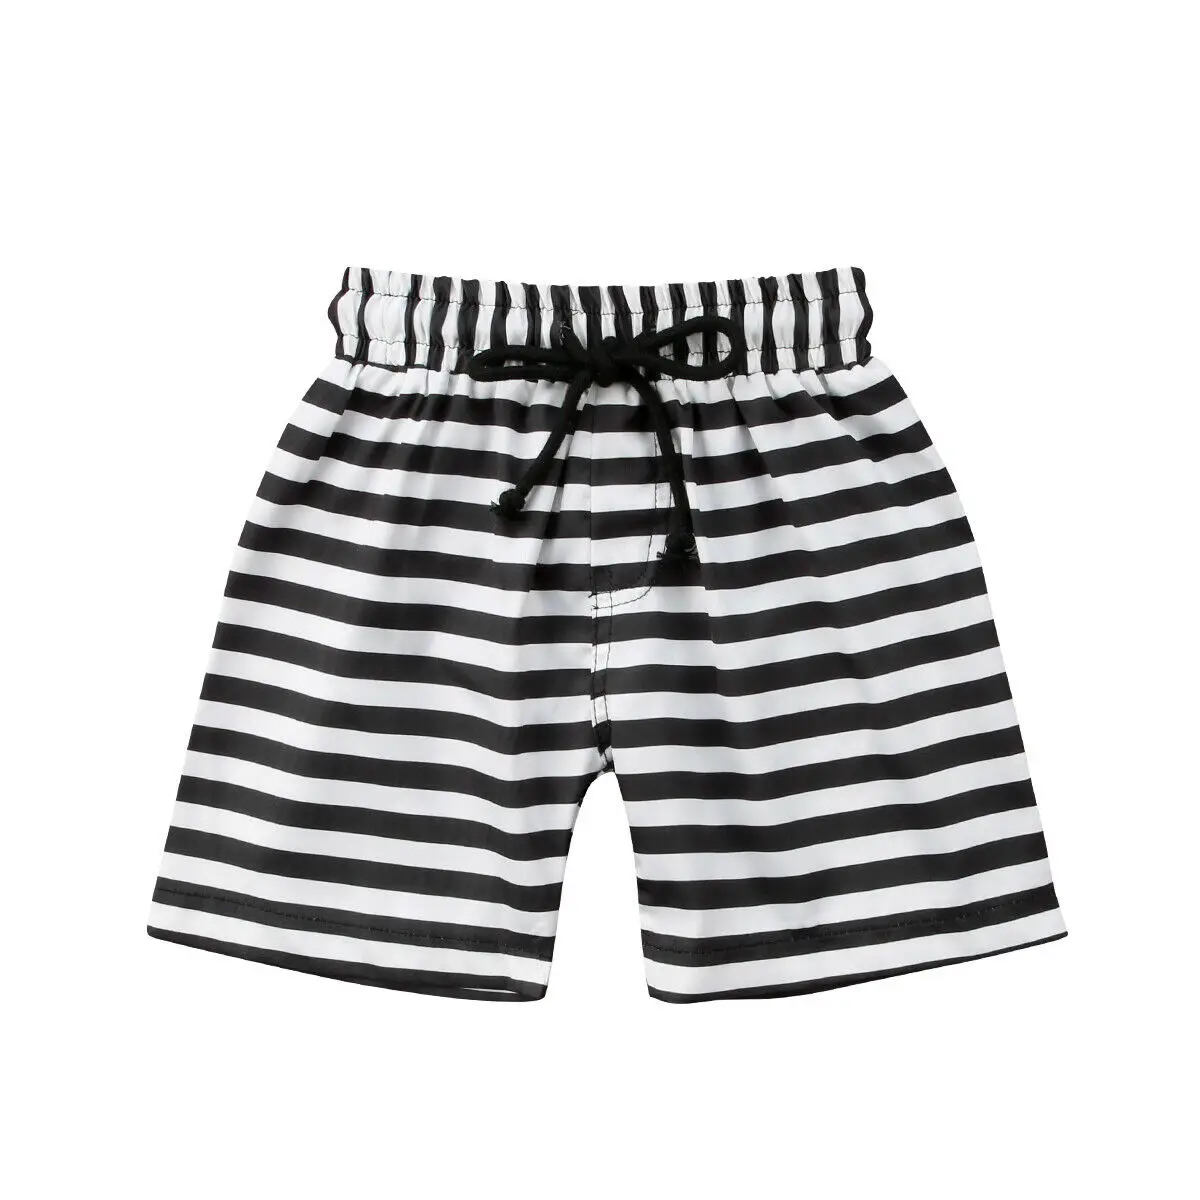 Купальник для маленького мальчика; хлопковая одежда; летние шорты для плавания; короткие брюки для маленьких мальчиков; одежда для детей; купальный костюм; пляжная одежда